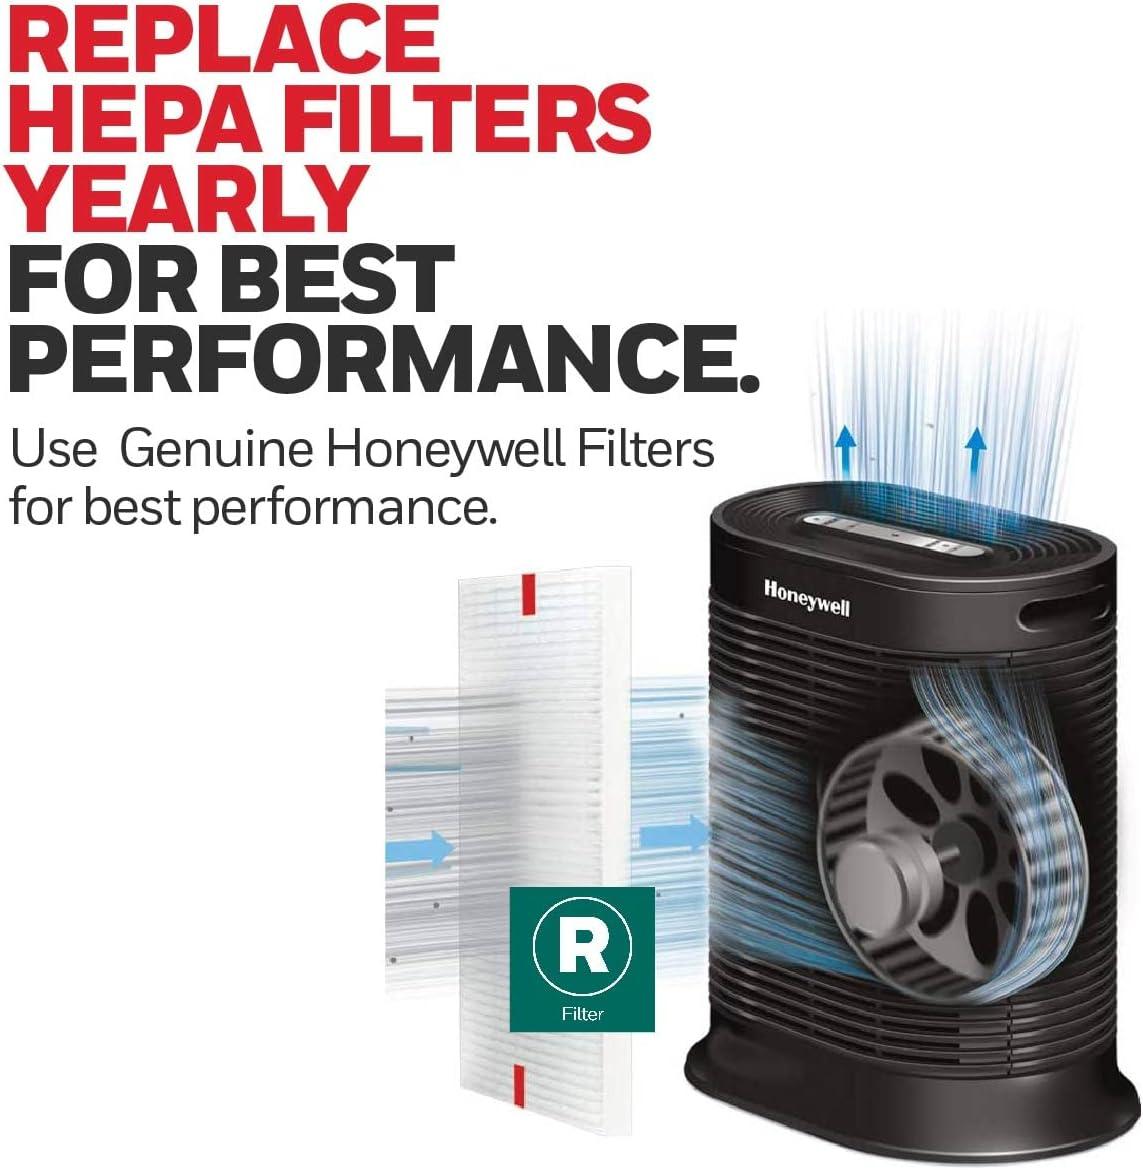 Honeywell filtro R True HEPA de repuesto, 1 paquete de 3 filtros, NA, Paquete - VIRTUAL MUEBLES